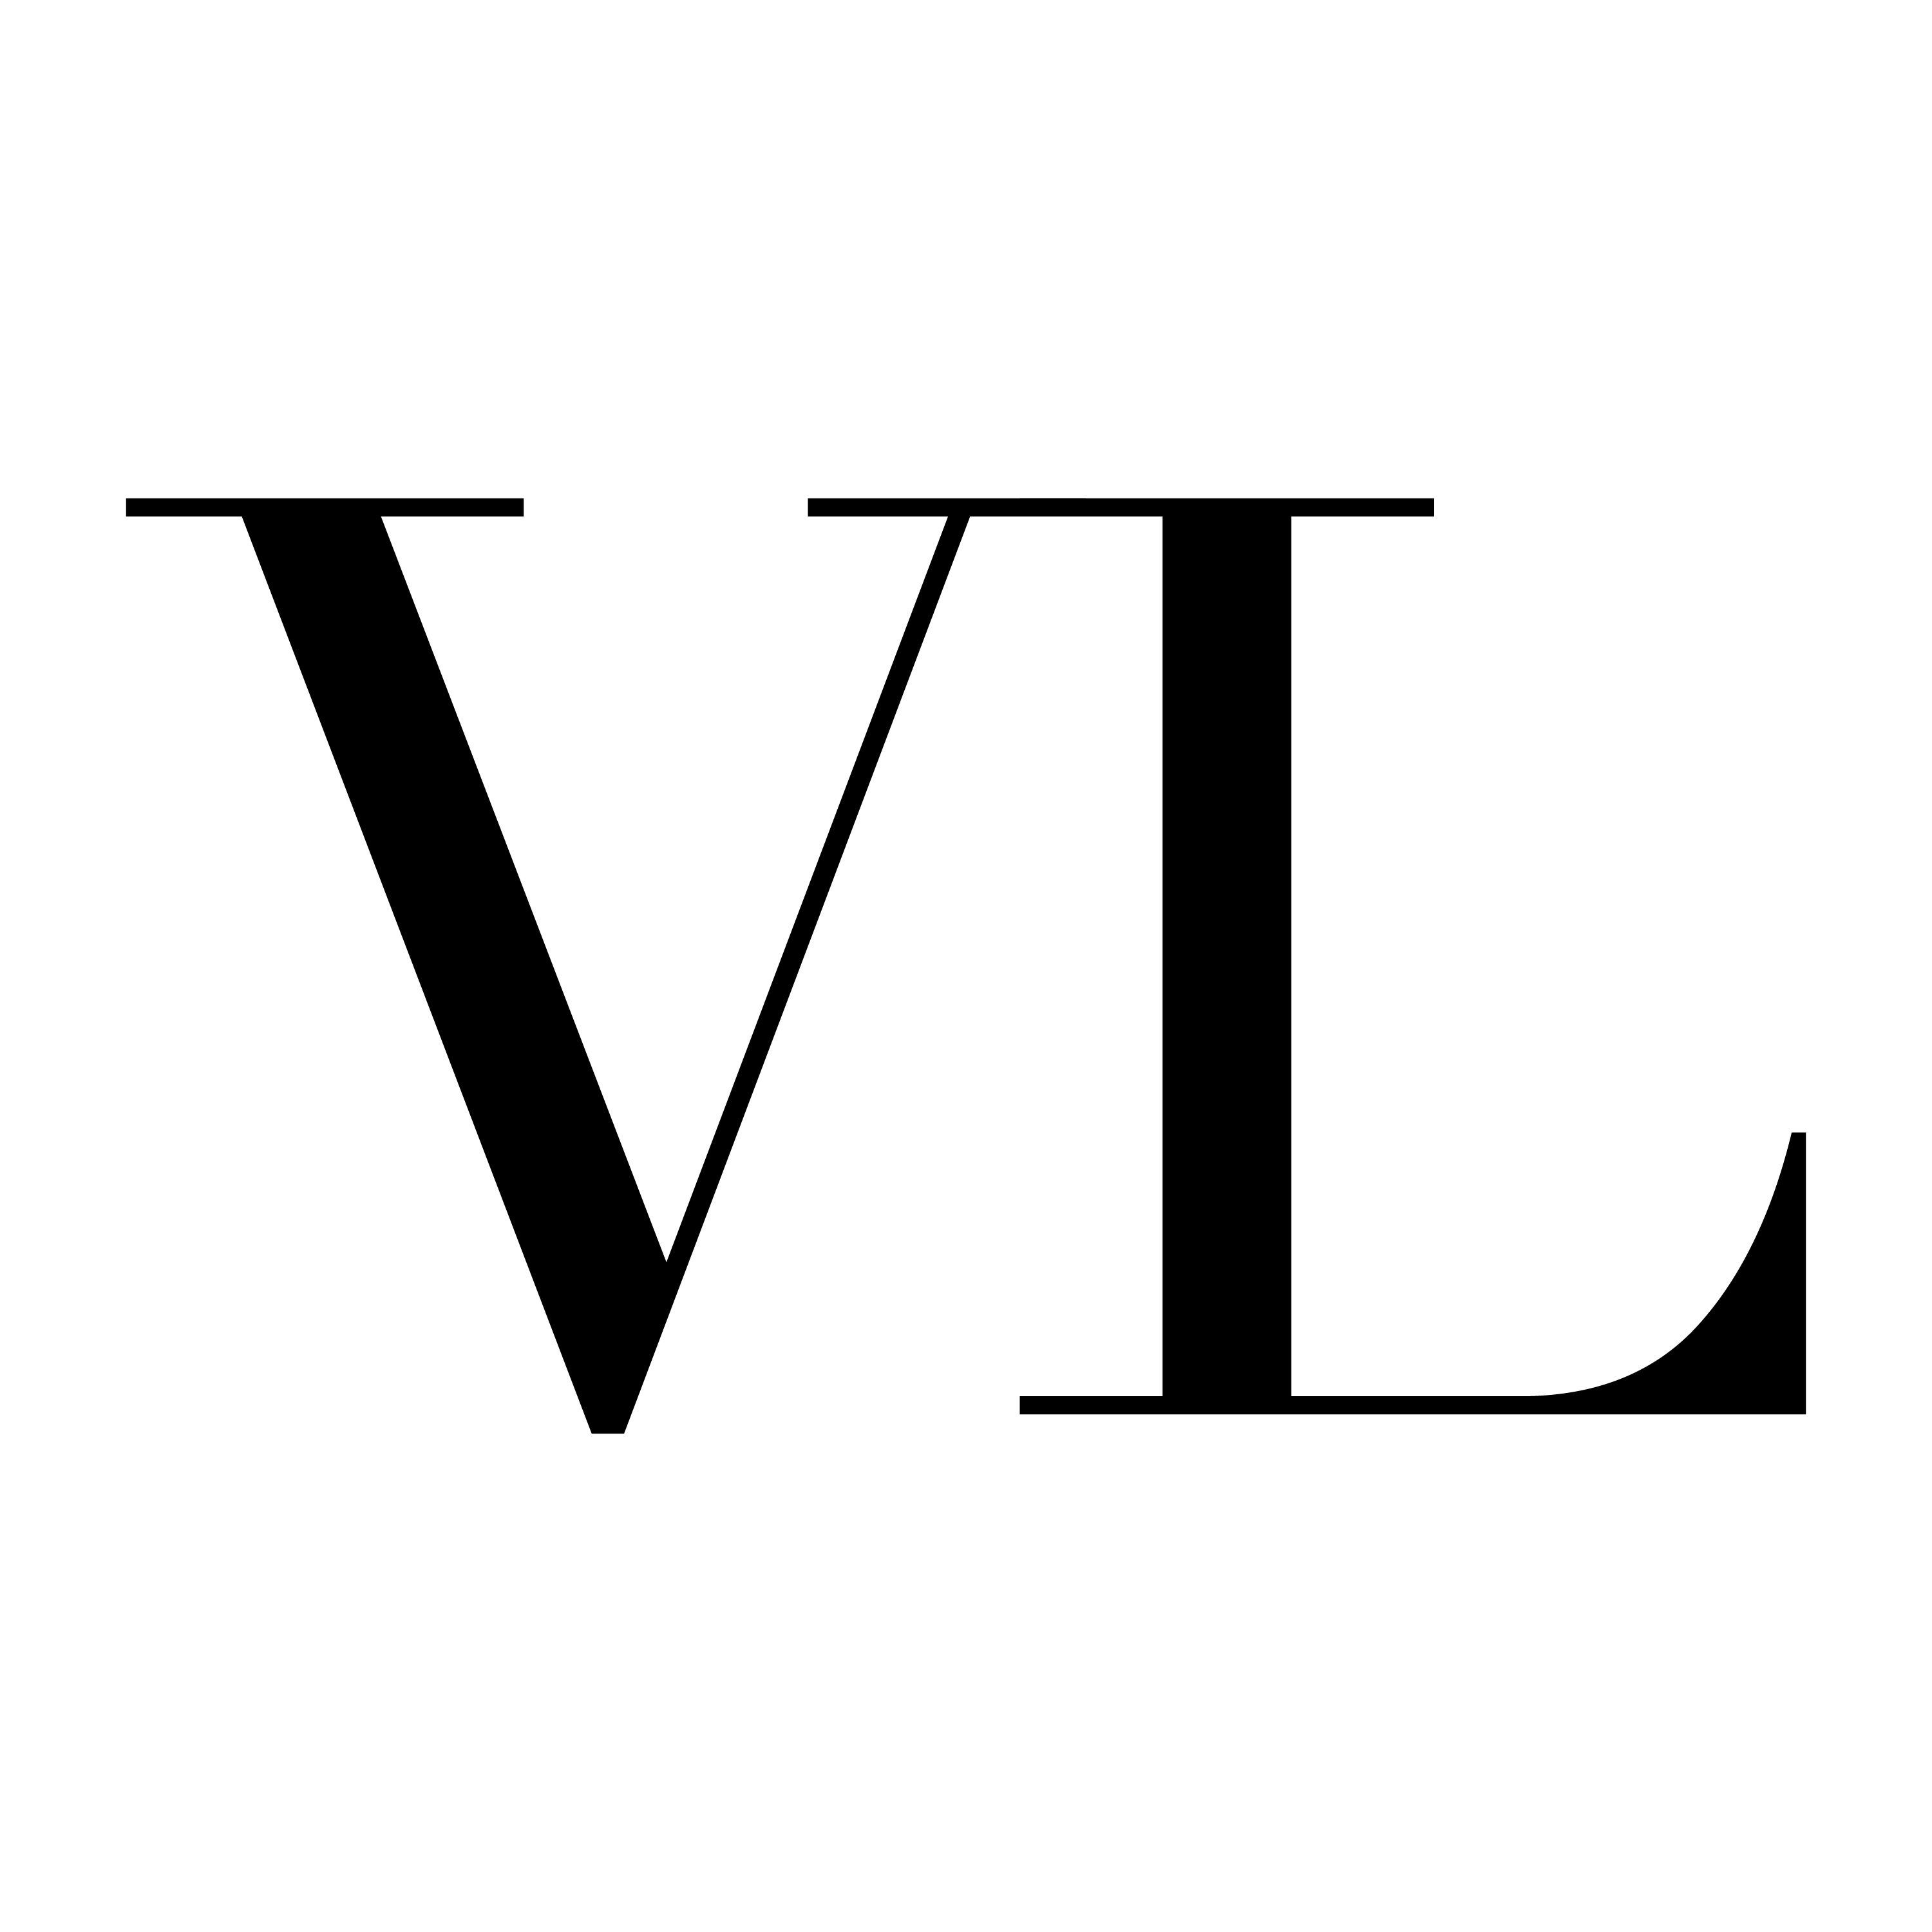 heart vl logo design